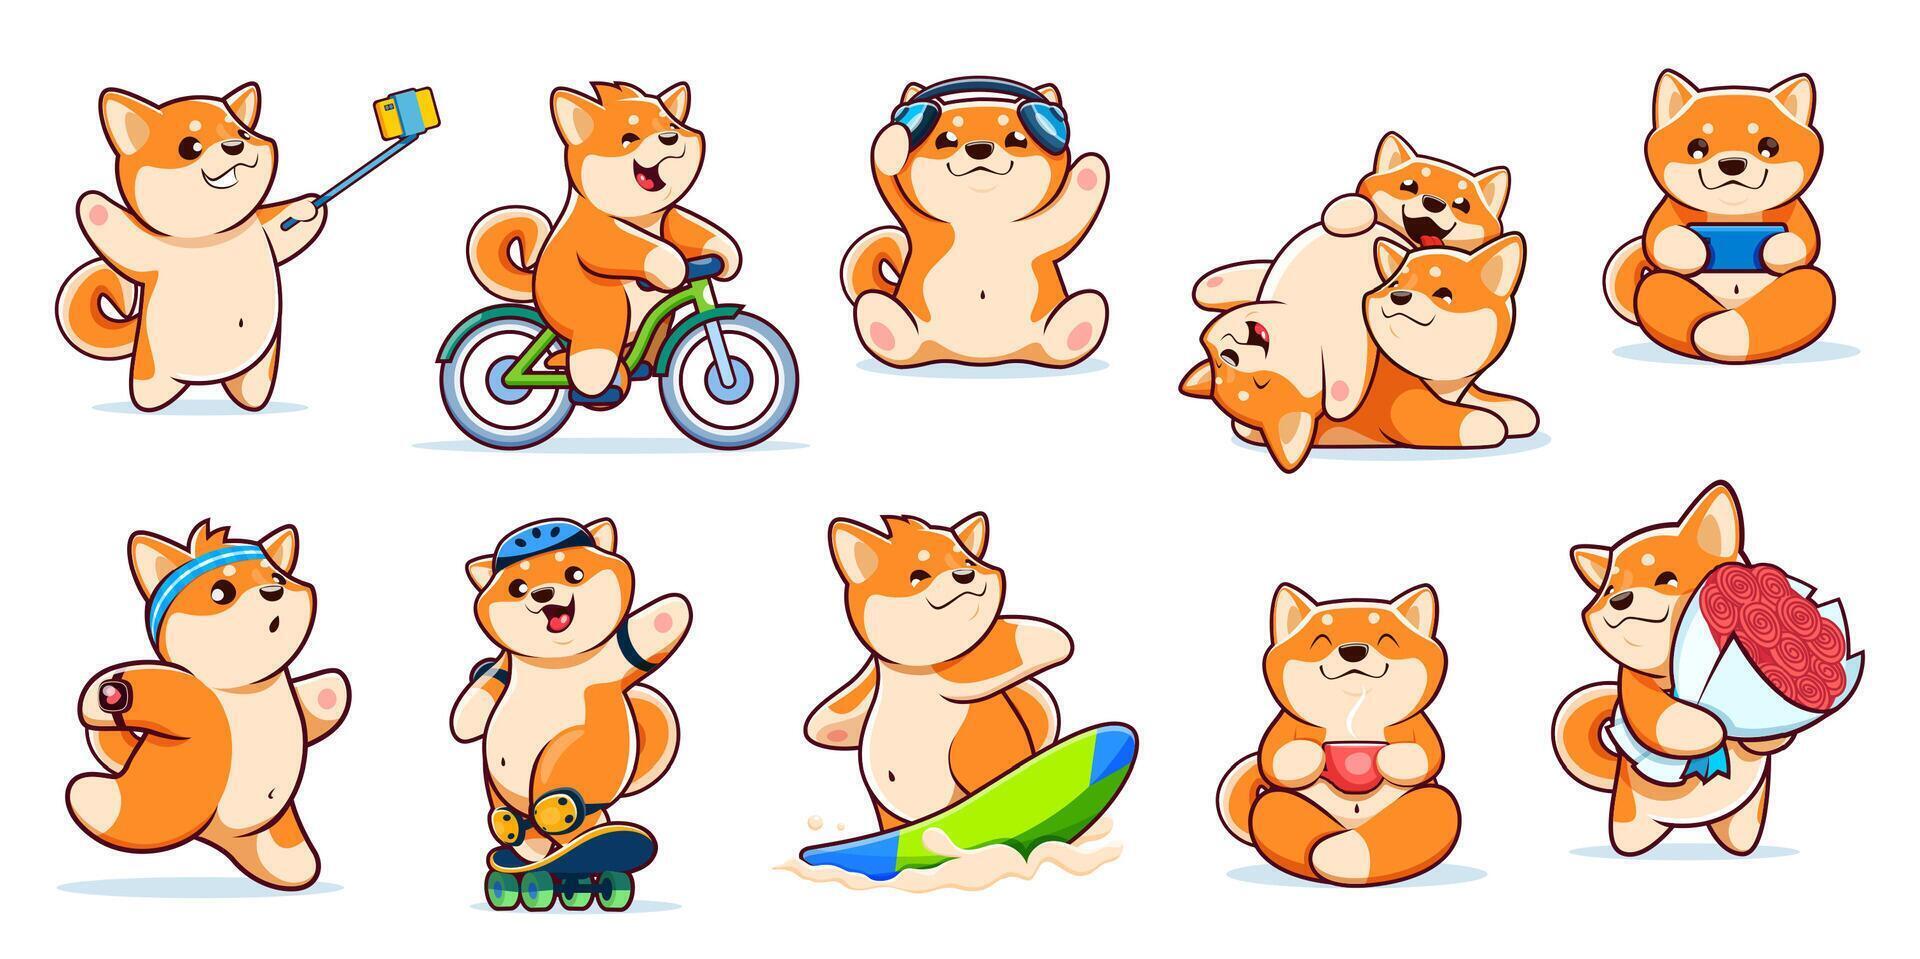 Cartoon kawaii pet Shiba Inu dog puppy characters vector